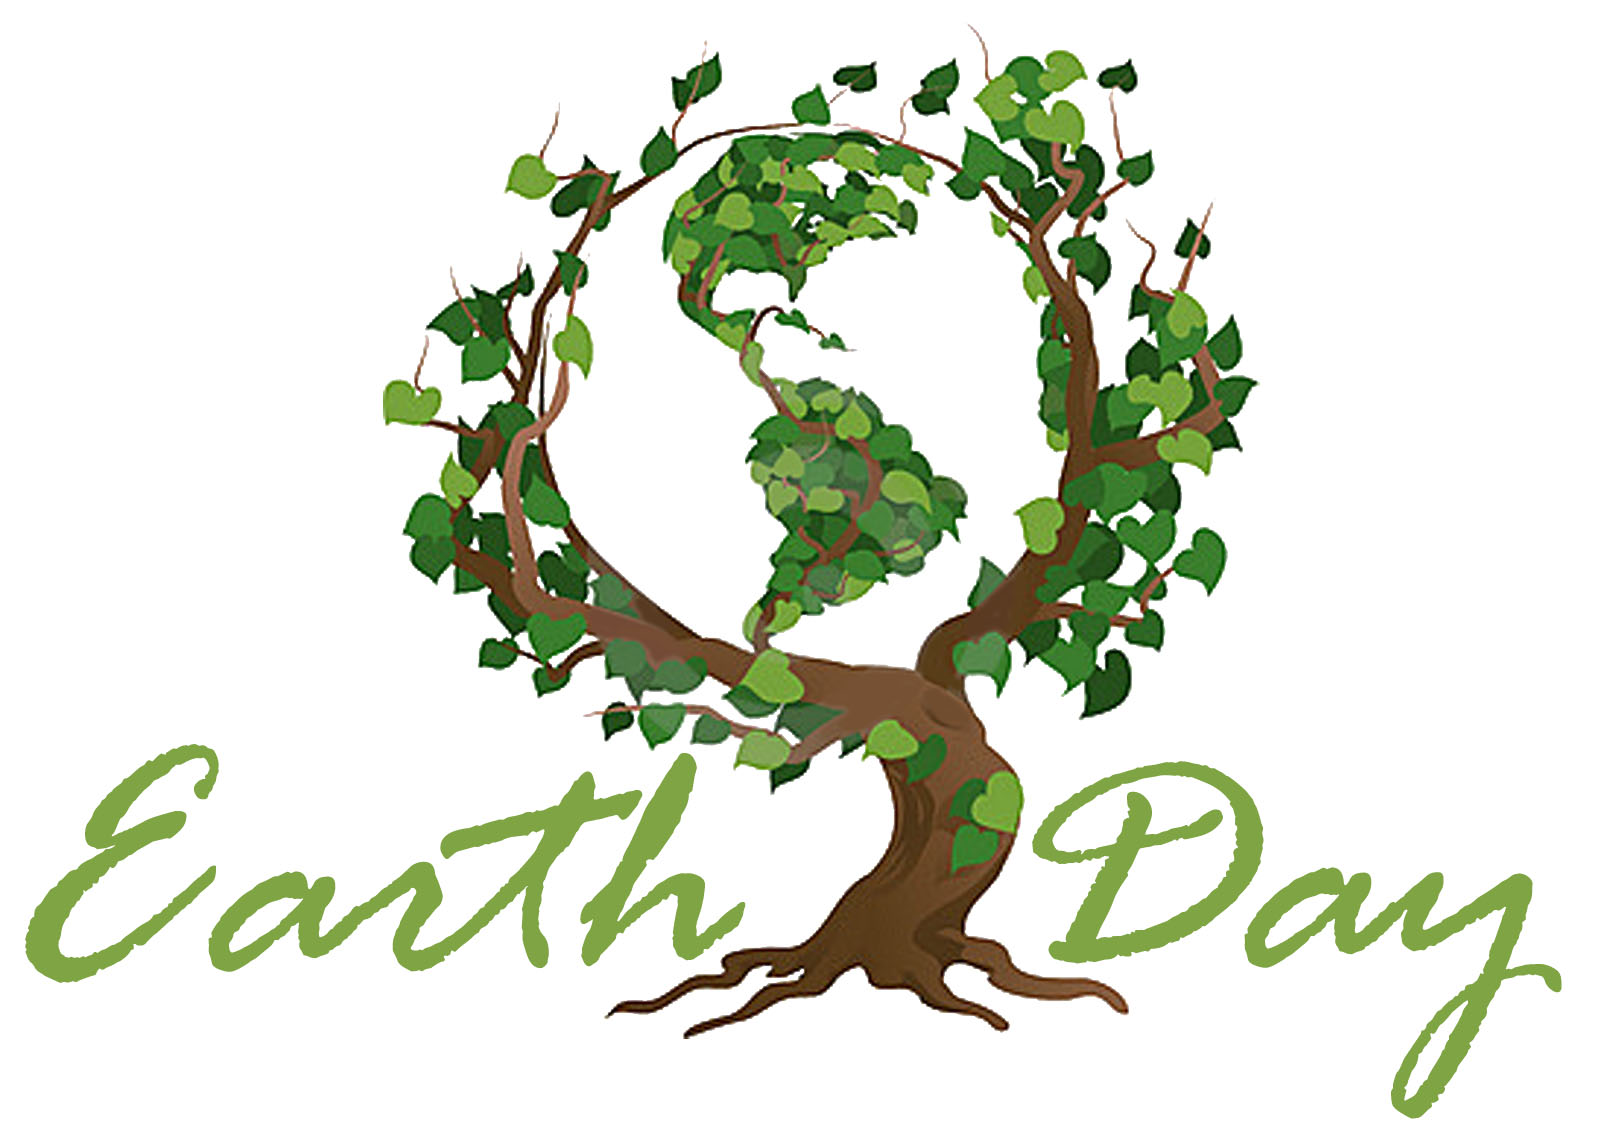 Celebrating Earth Day-April 22